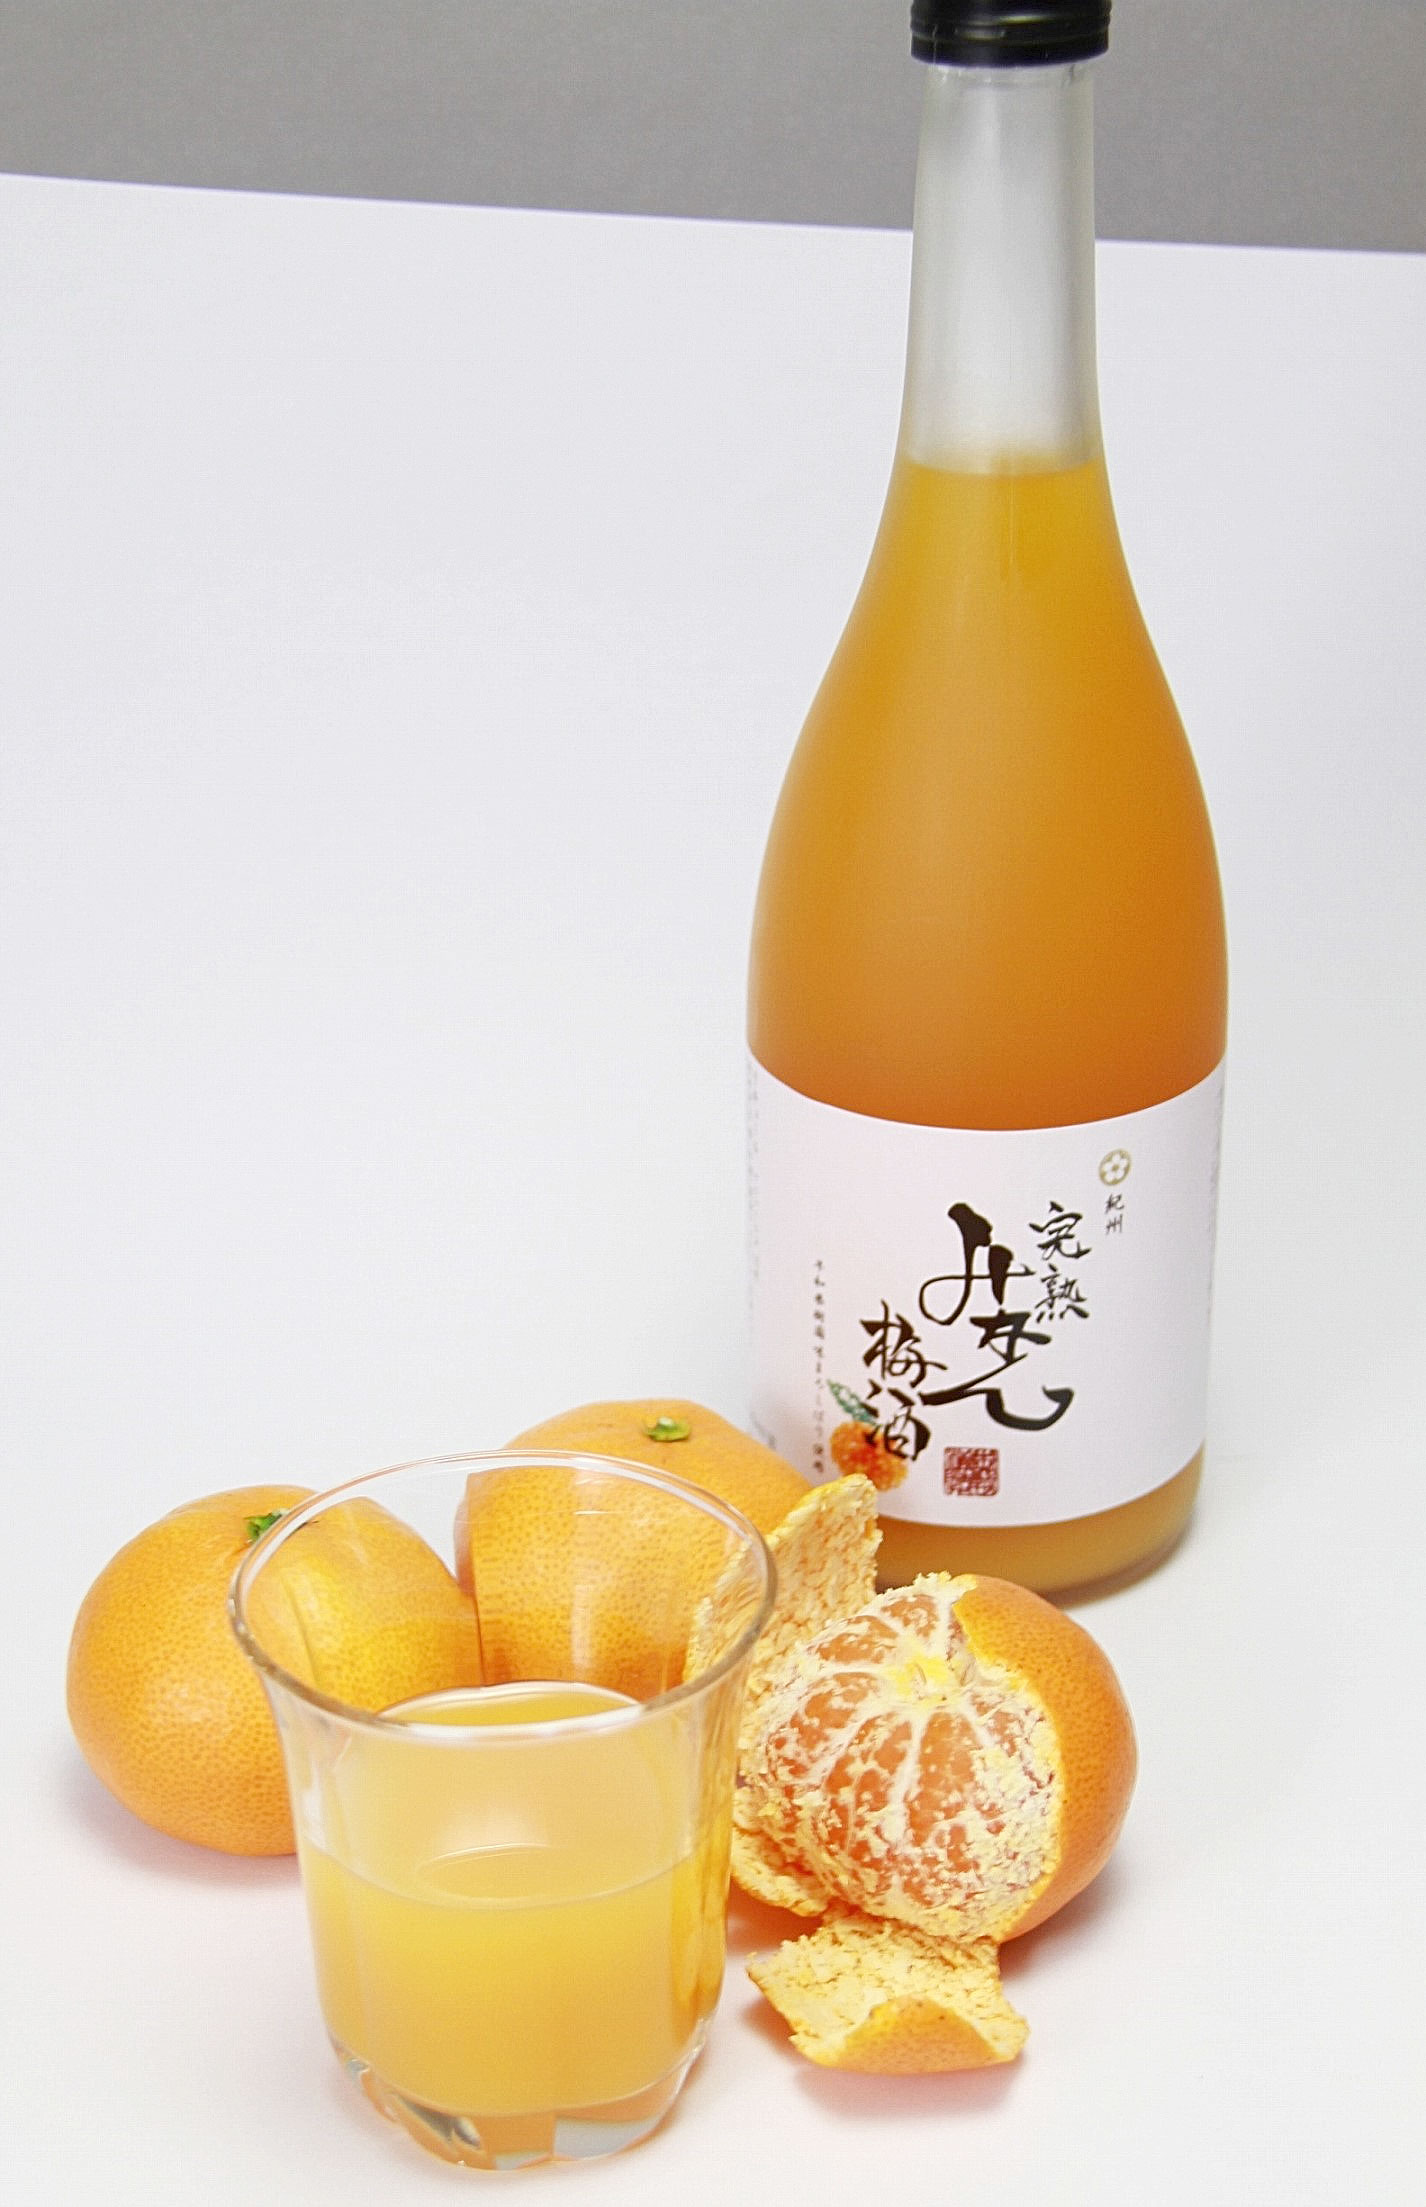 和歌山産の有田みかんと梅酒を組み合わせた「完熟みかん梅酒」。カクテル梅酒は30種類以上のラインナップがある。（提供：中野BC）